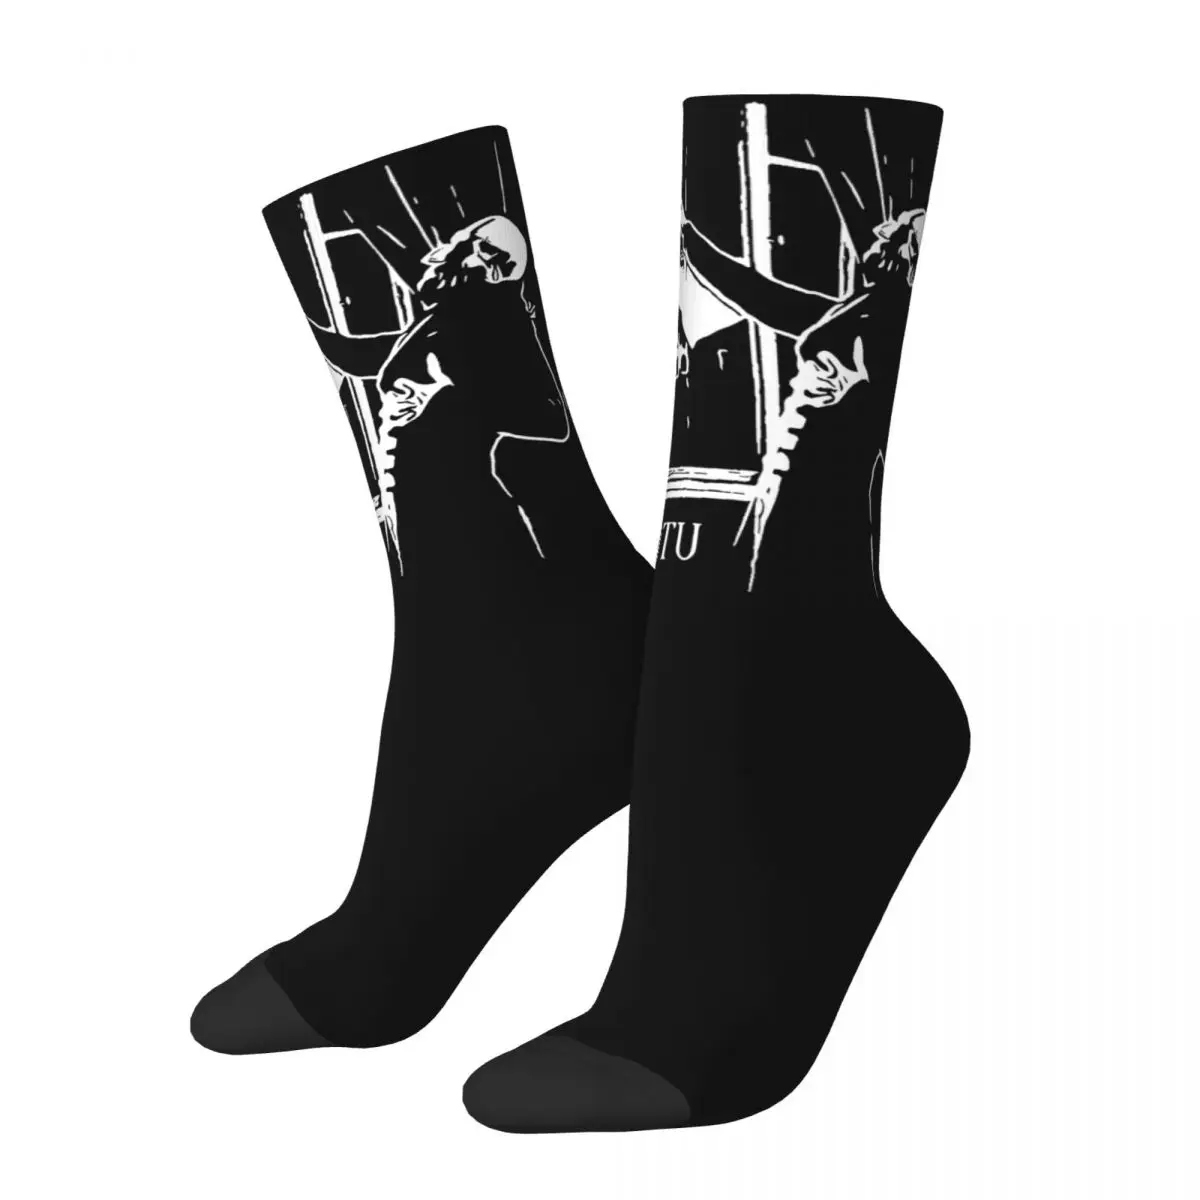 

Носки Nosferatu для мужчин и женщин, забавные носки счастливого ужаса в стиле Харадзюку, на весну, лето, осень, зиму, подарочные чулки